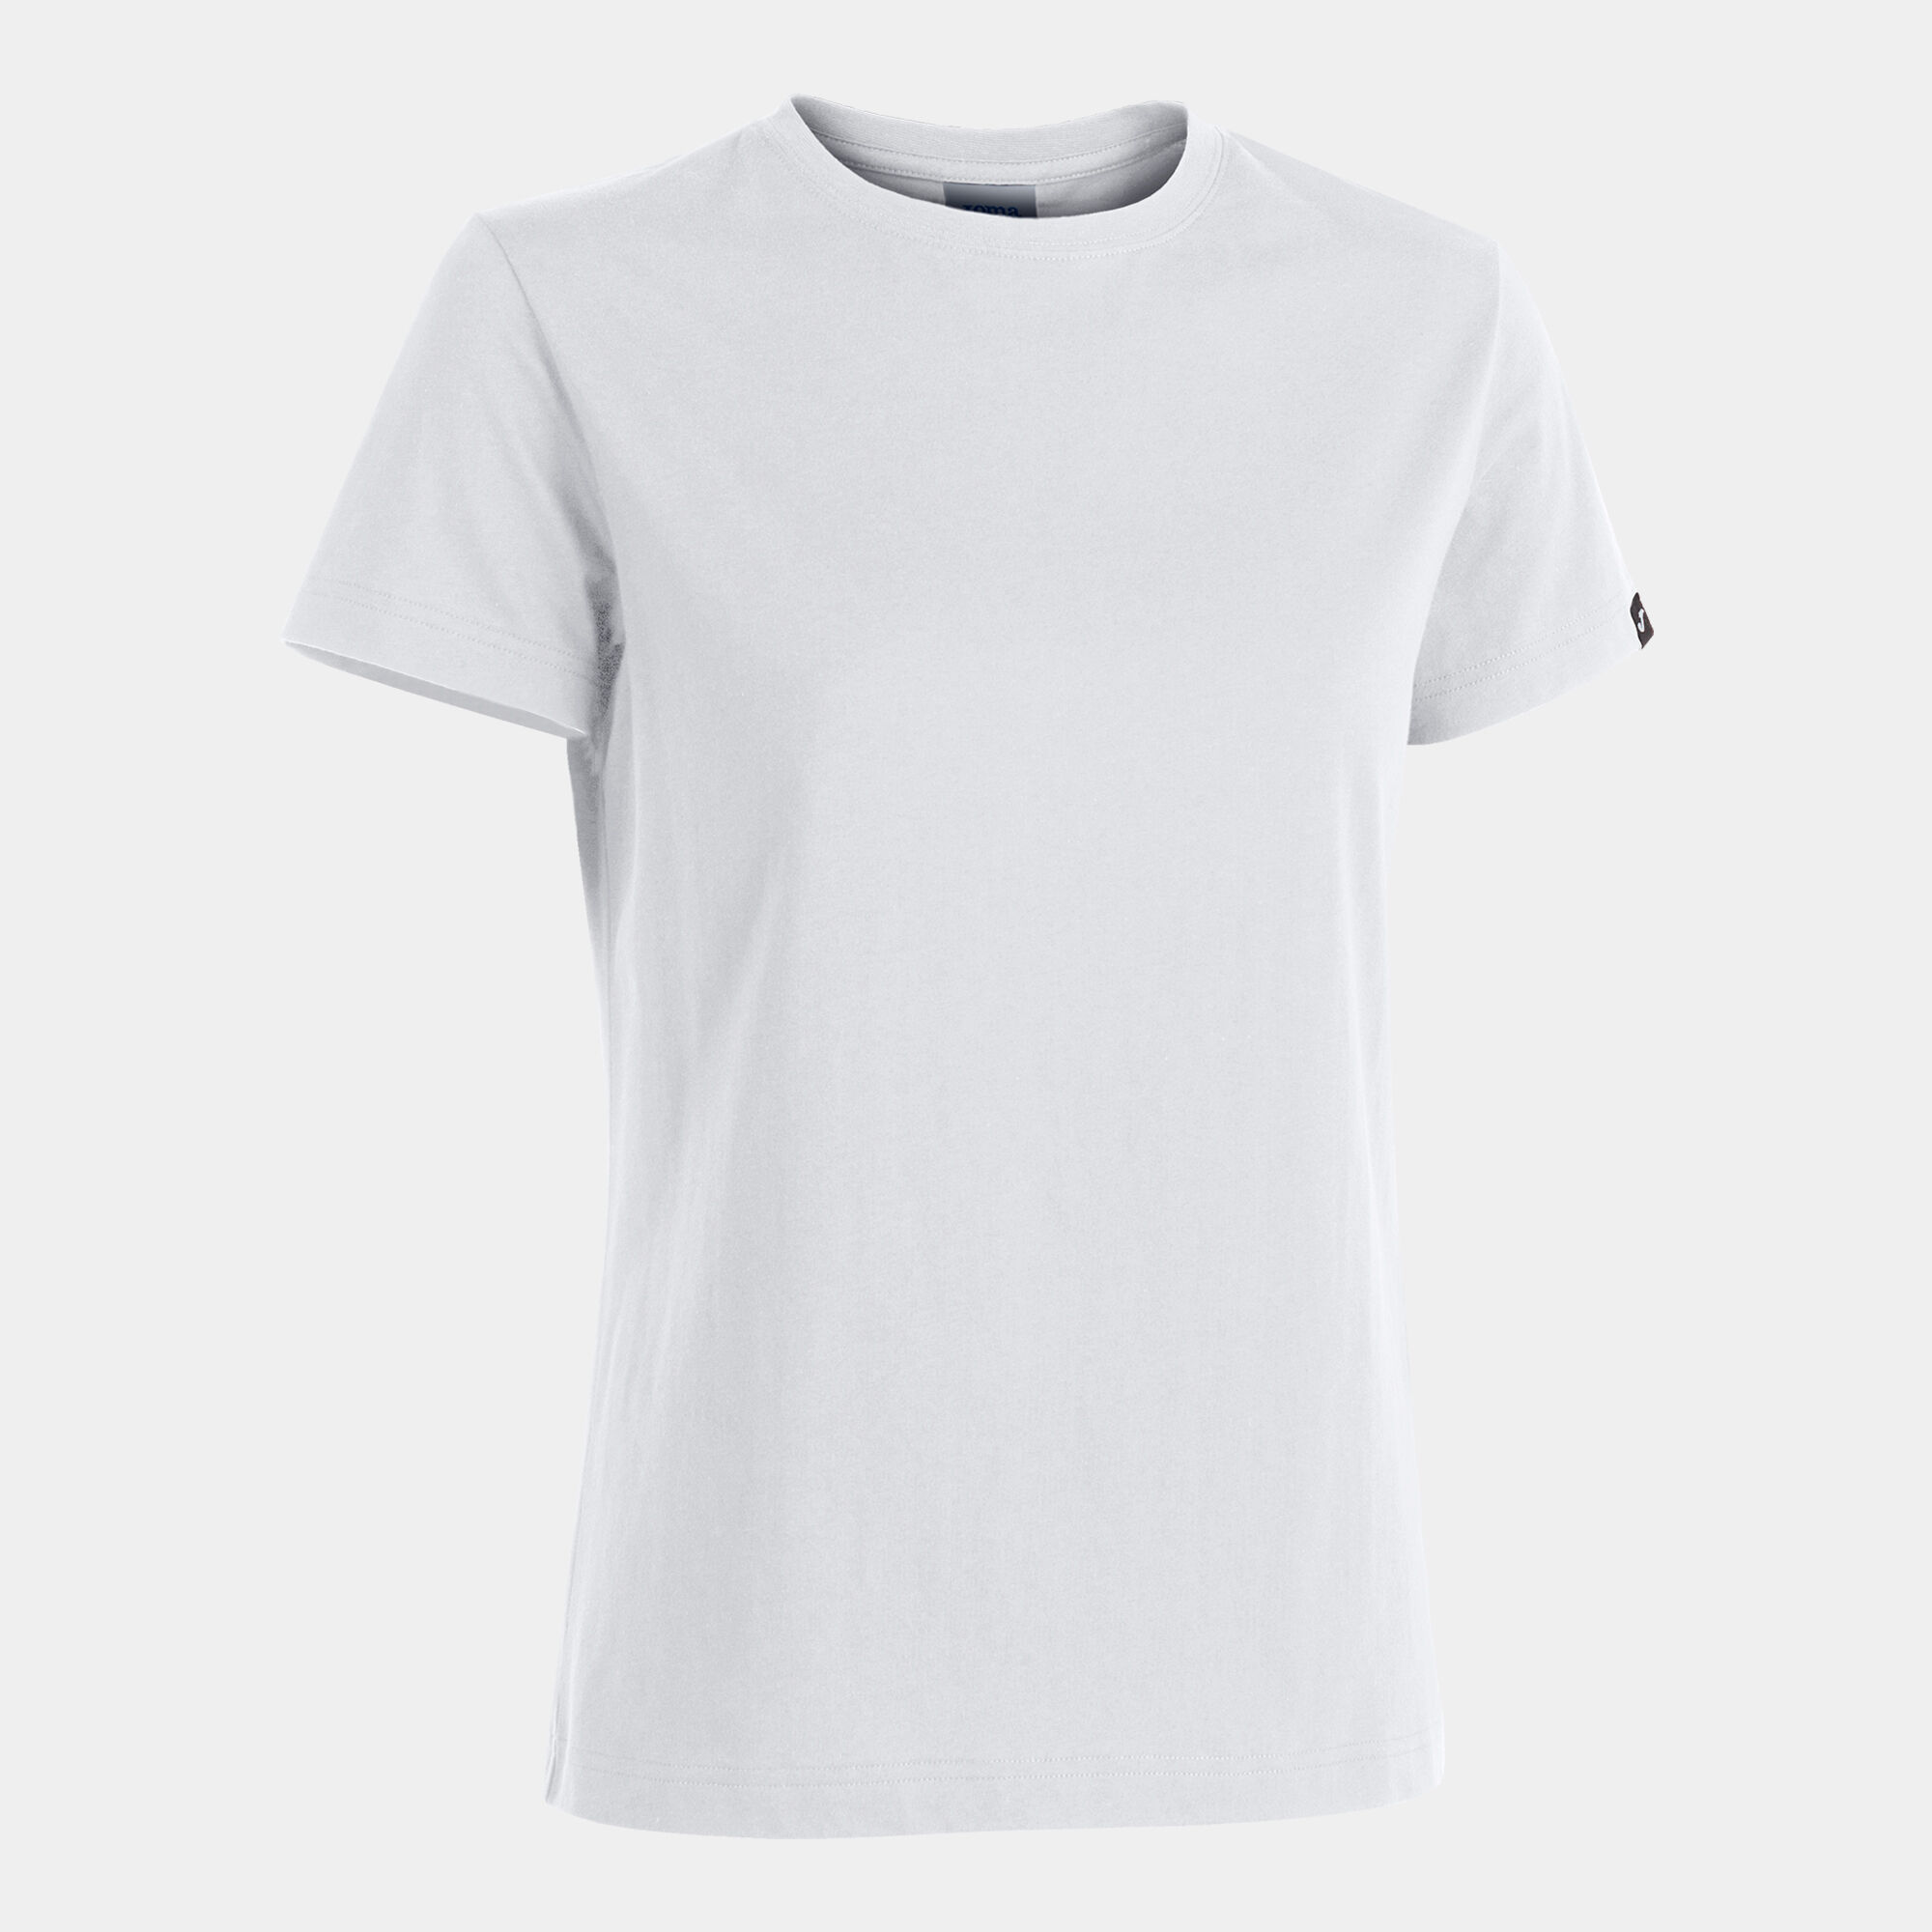 Camiseta manga corta mujer Desert blanco